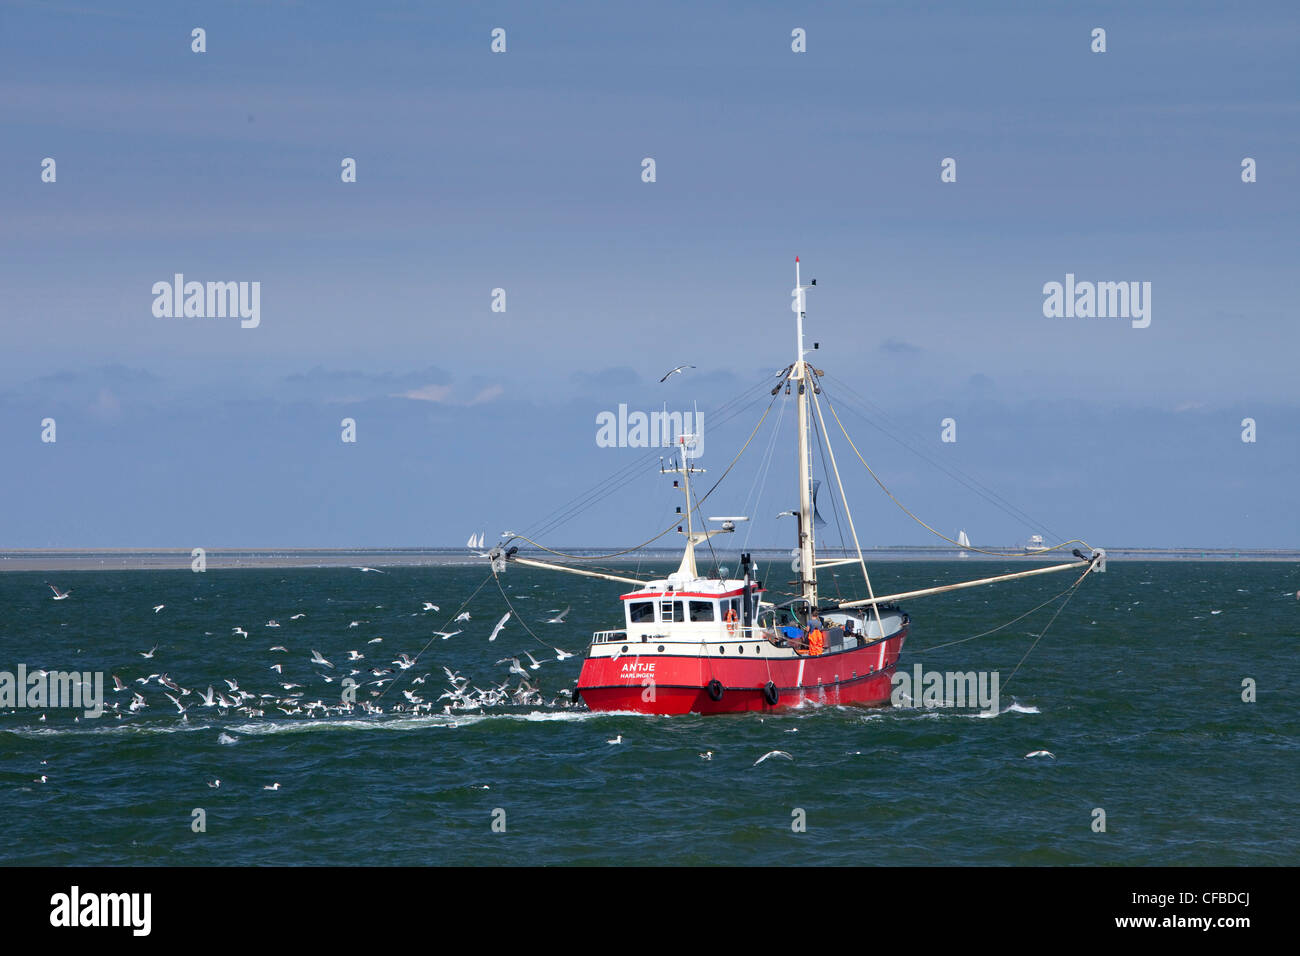 Holland, Europa Paesi Bassi, nave, barca, navi, barche barca da pesca, mare Foto Stock